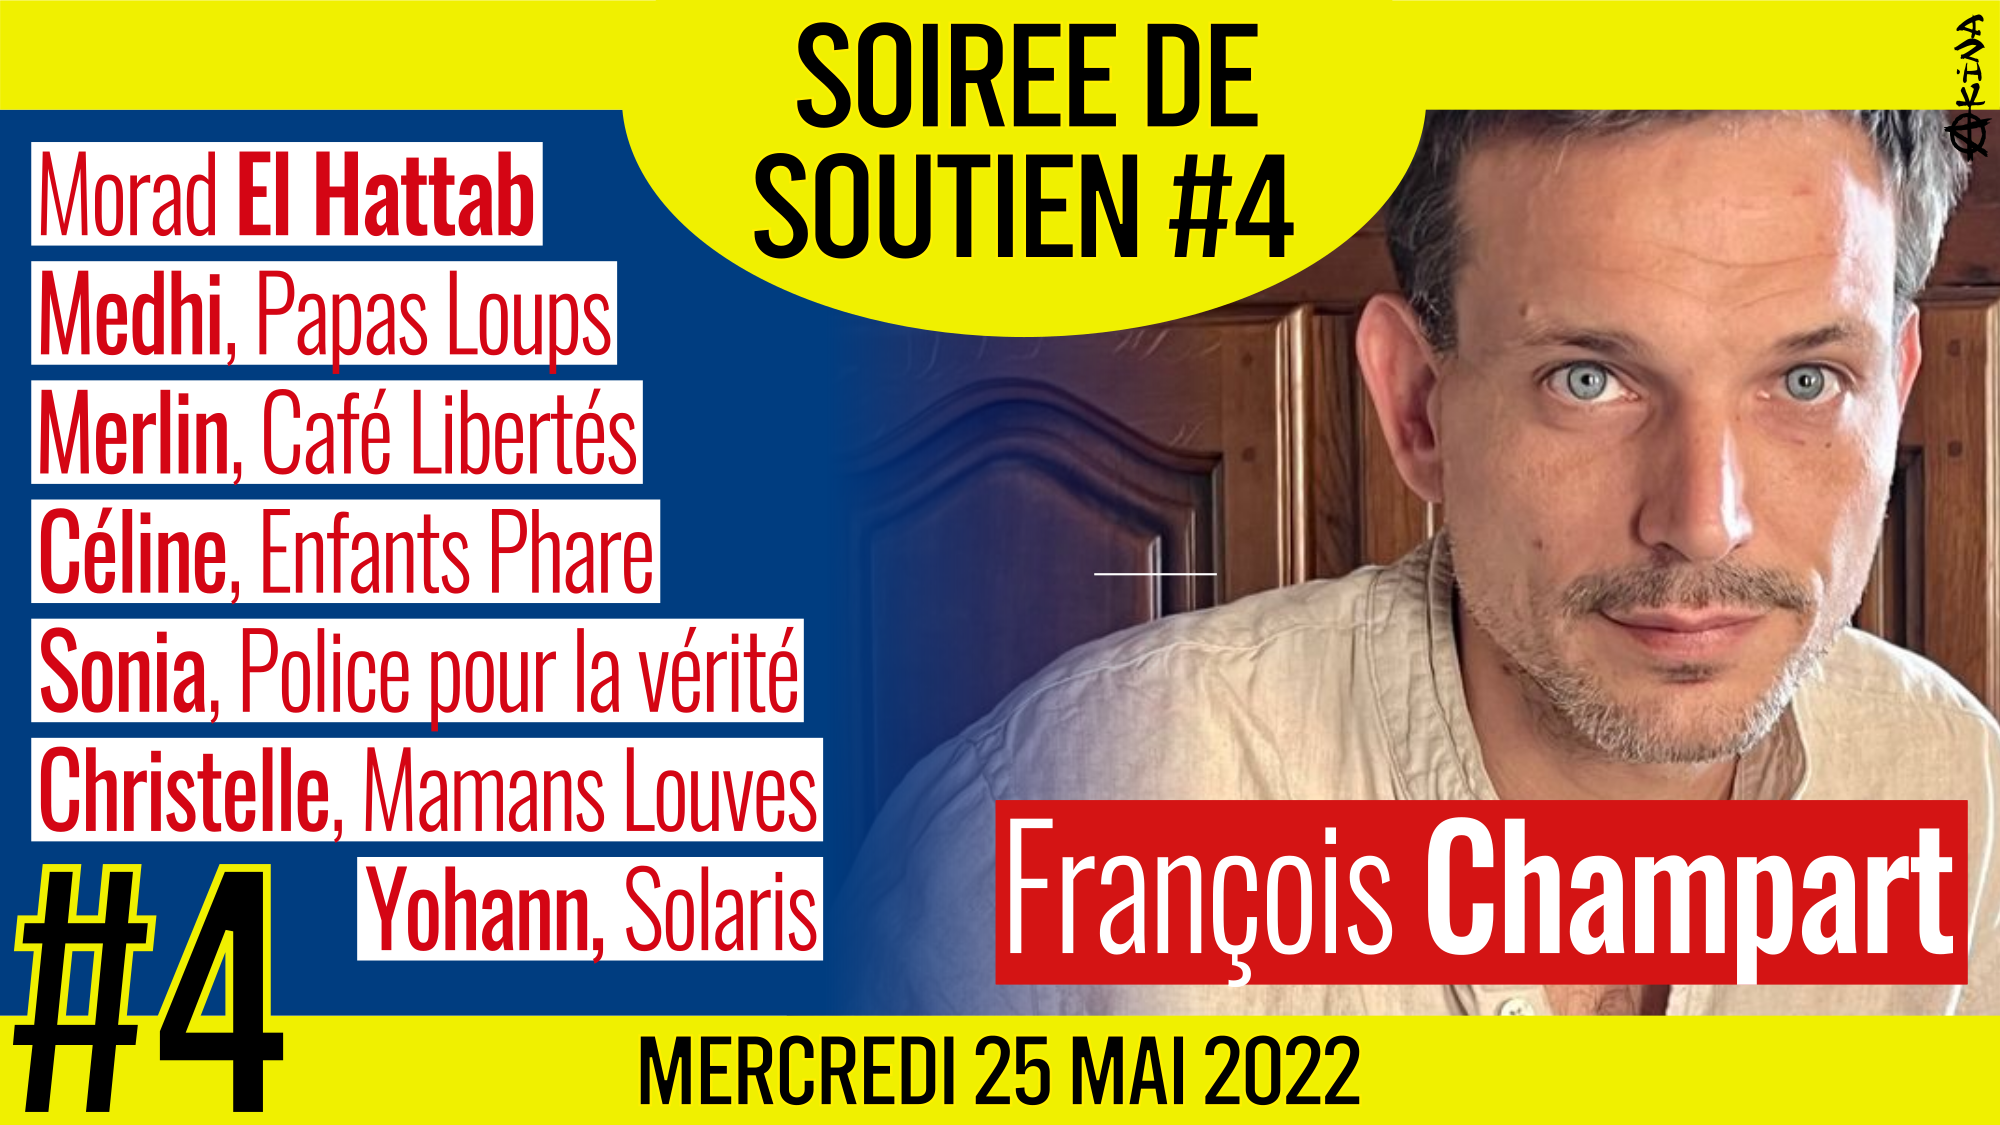 💛 SOUTIEN à François CHAMPART 👨‍👩‍👧‍👦 Morad El Hattab, Medhi, Merlin, Céline, Sonia, Christelle et Yohan 📅 25-05-2022